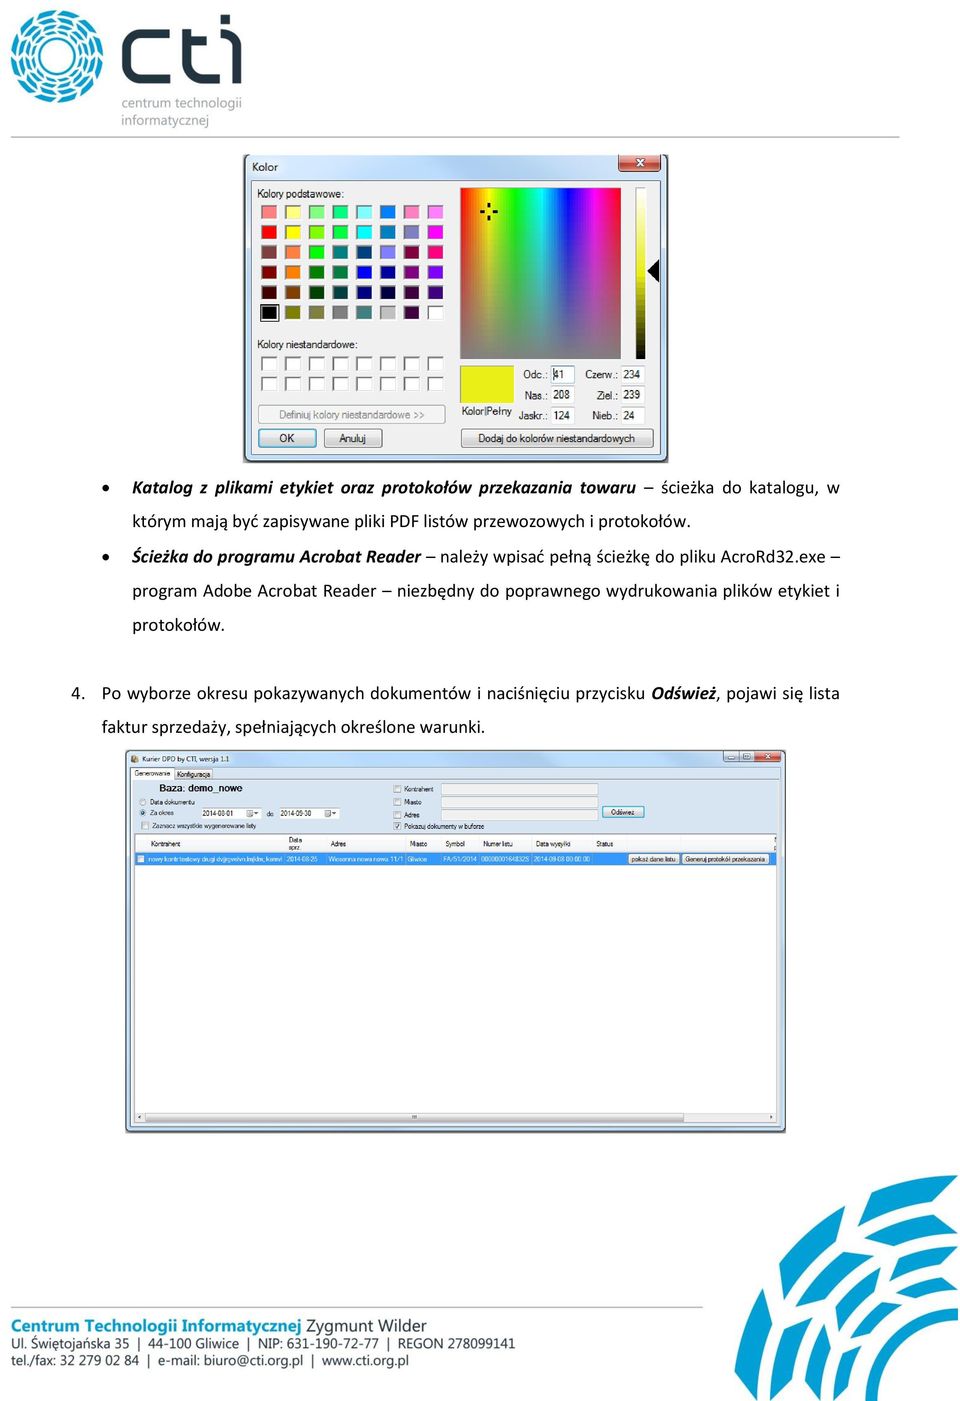 exe program Adobe Acrobat Reader niezbędny do poprawnego wydrukowania plików etykiet i protokołów. 4.